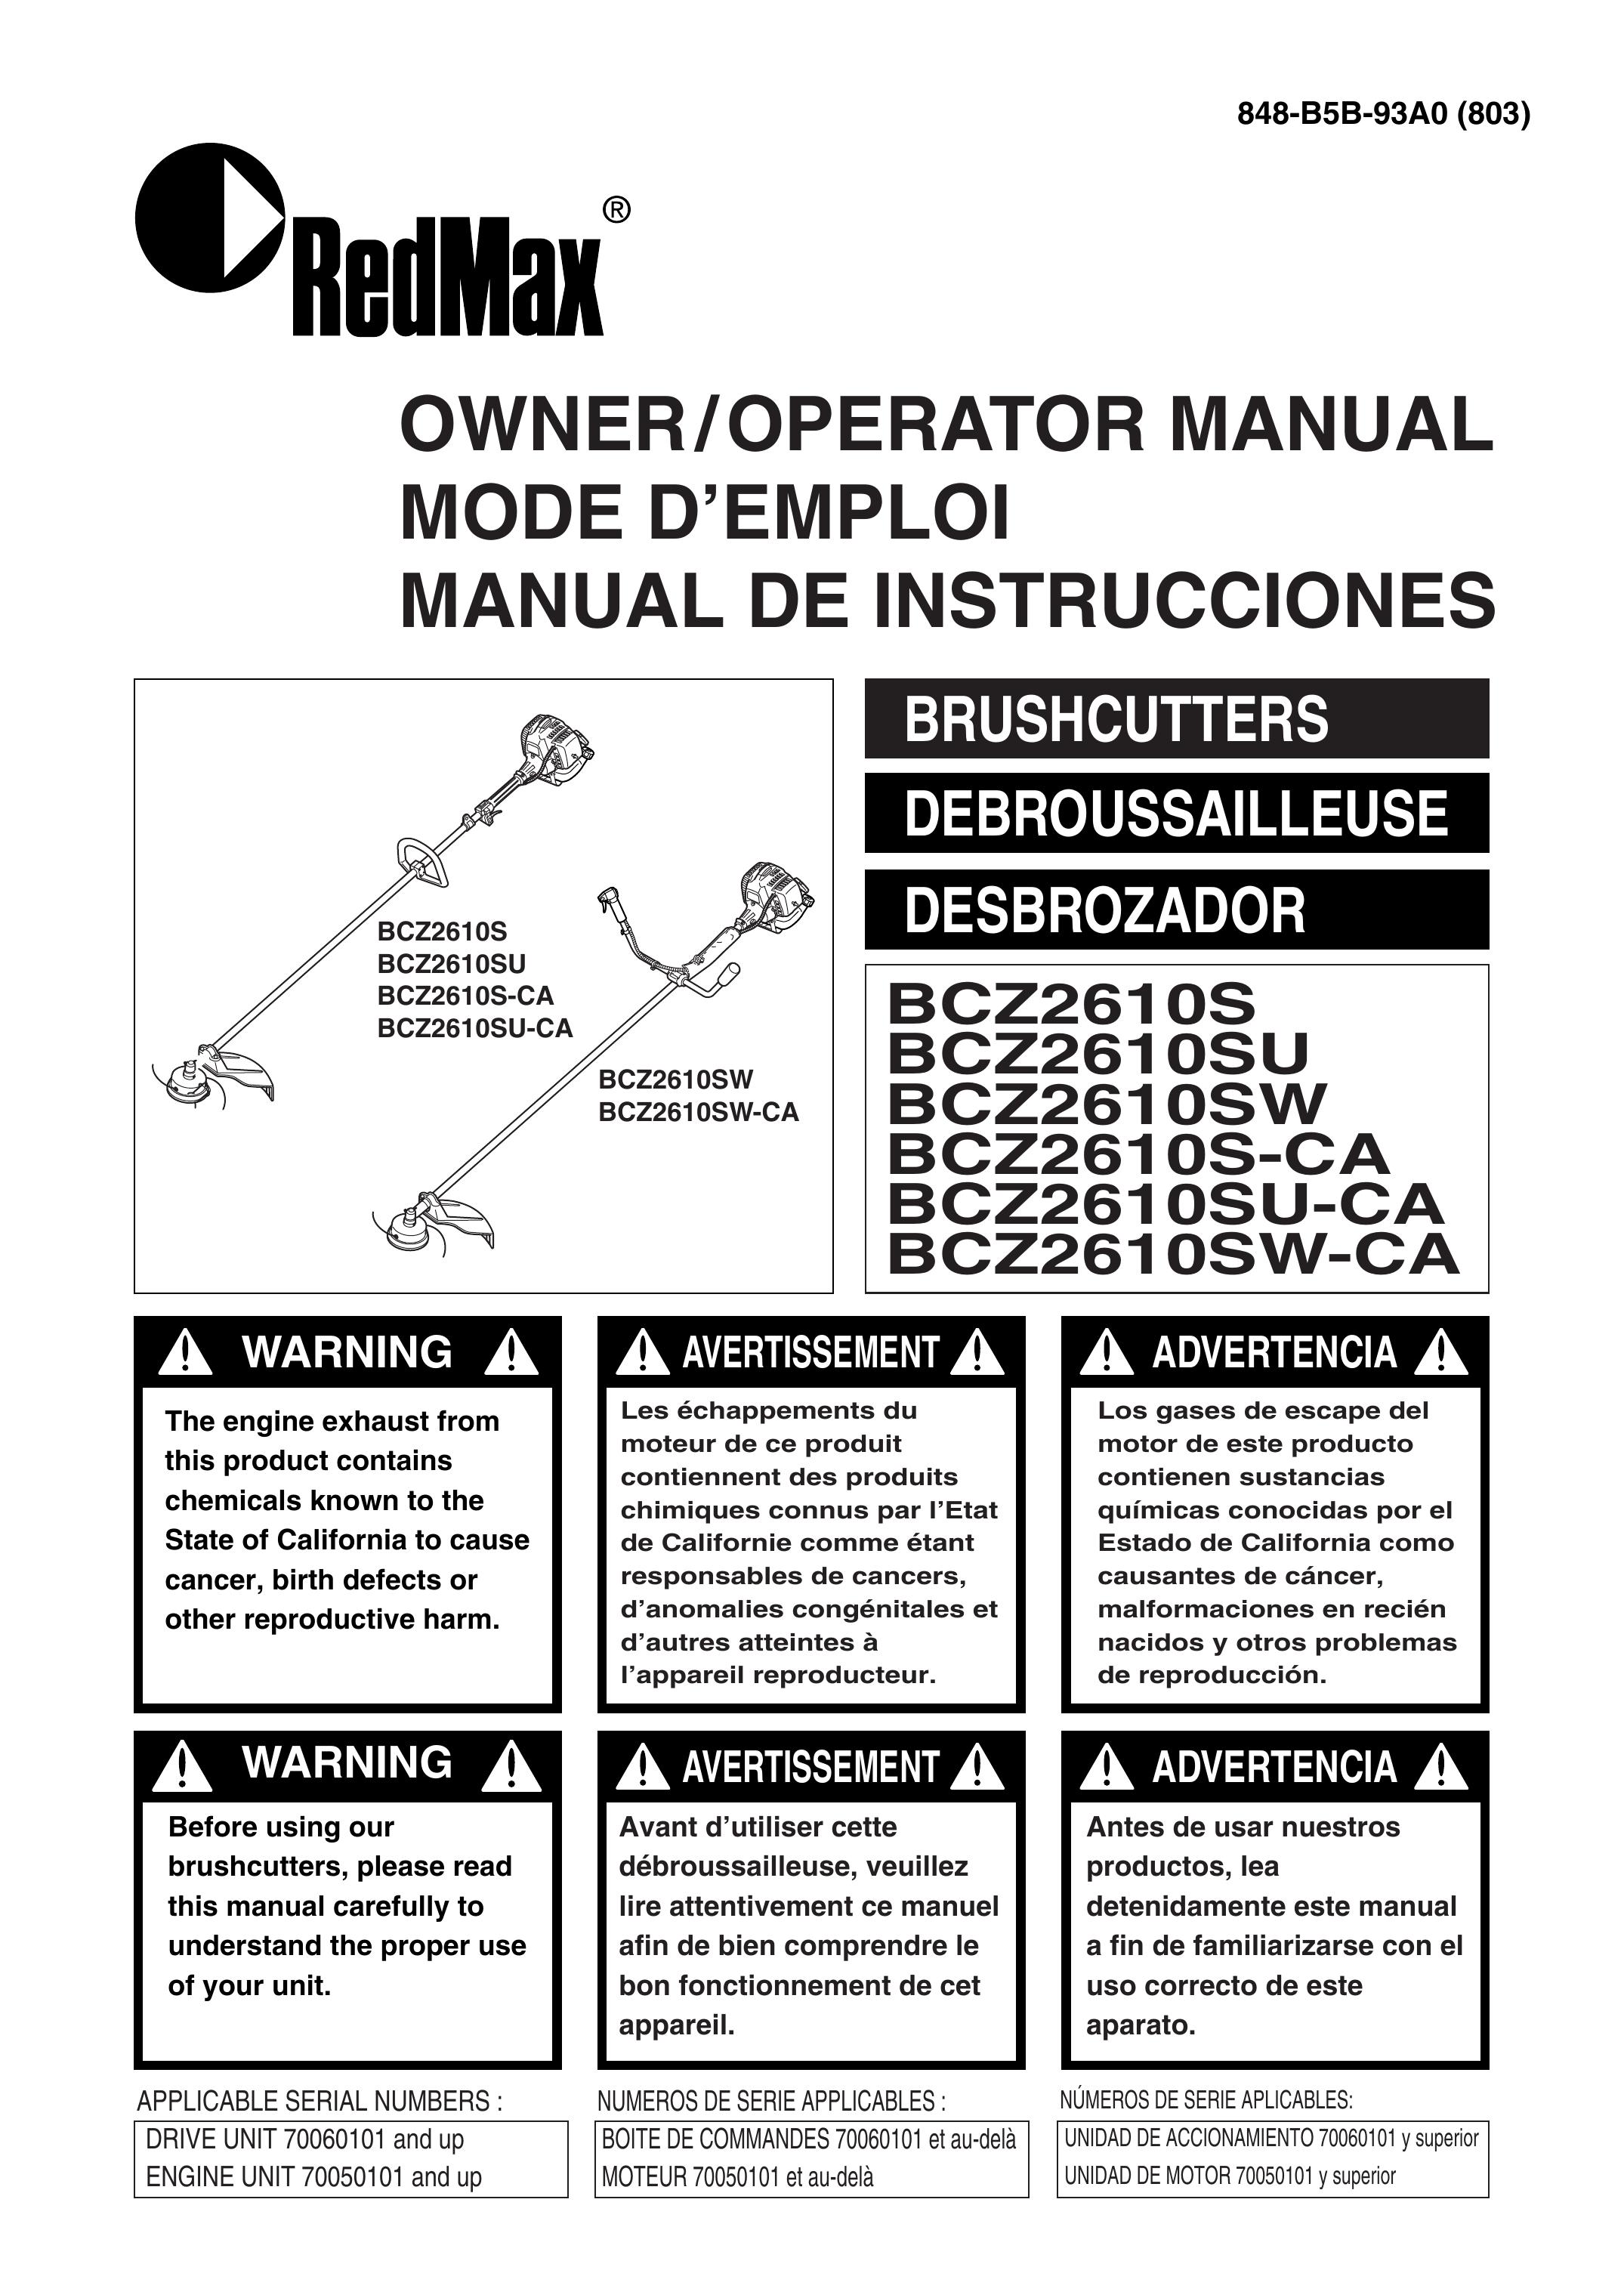 RedMax BCZ2610SU-CA Brush Cutter User Manual